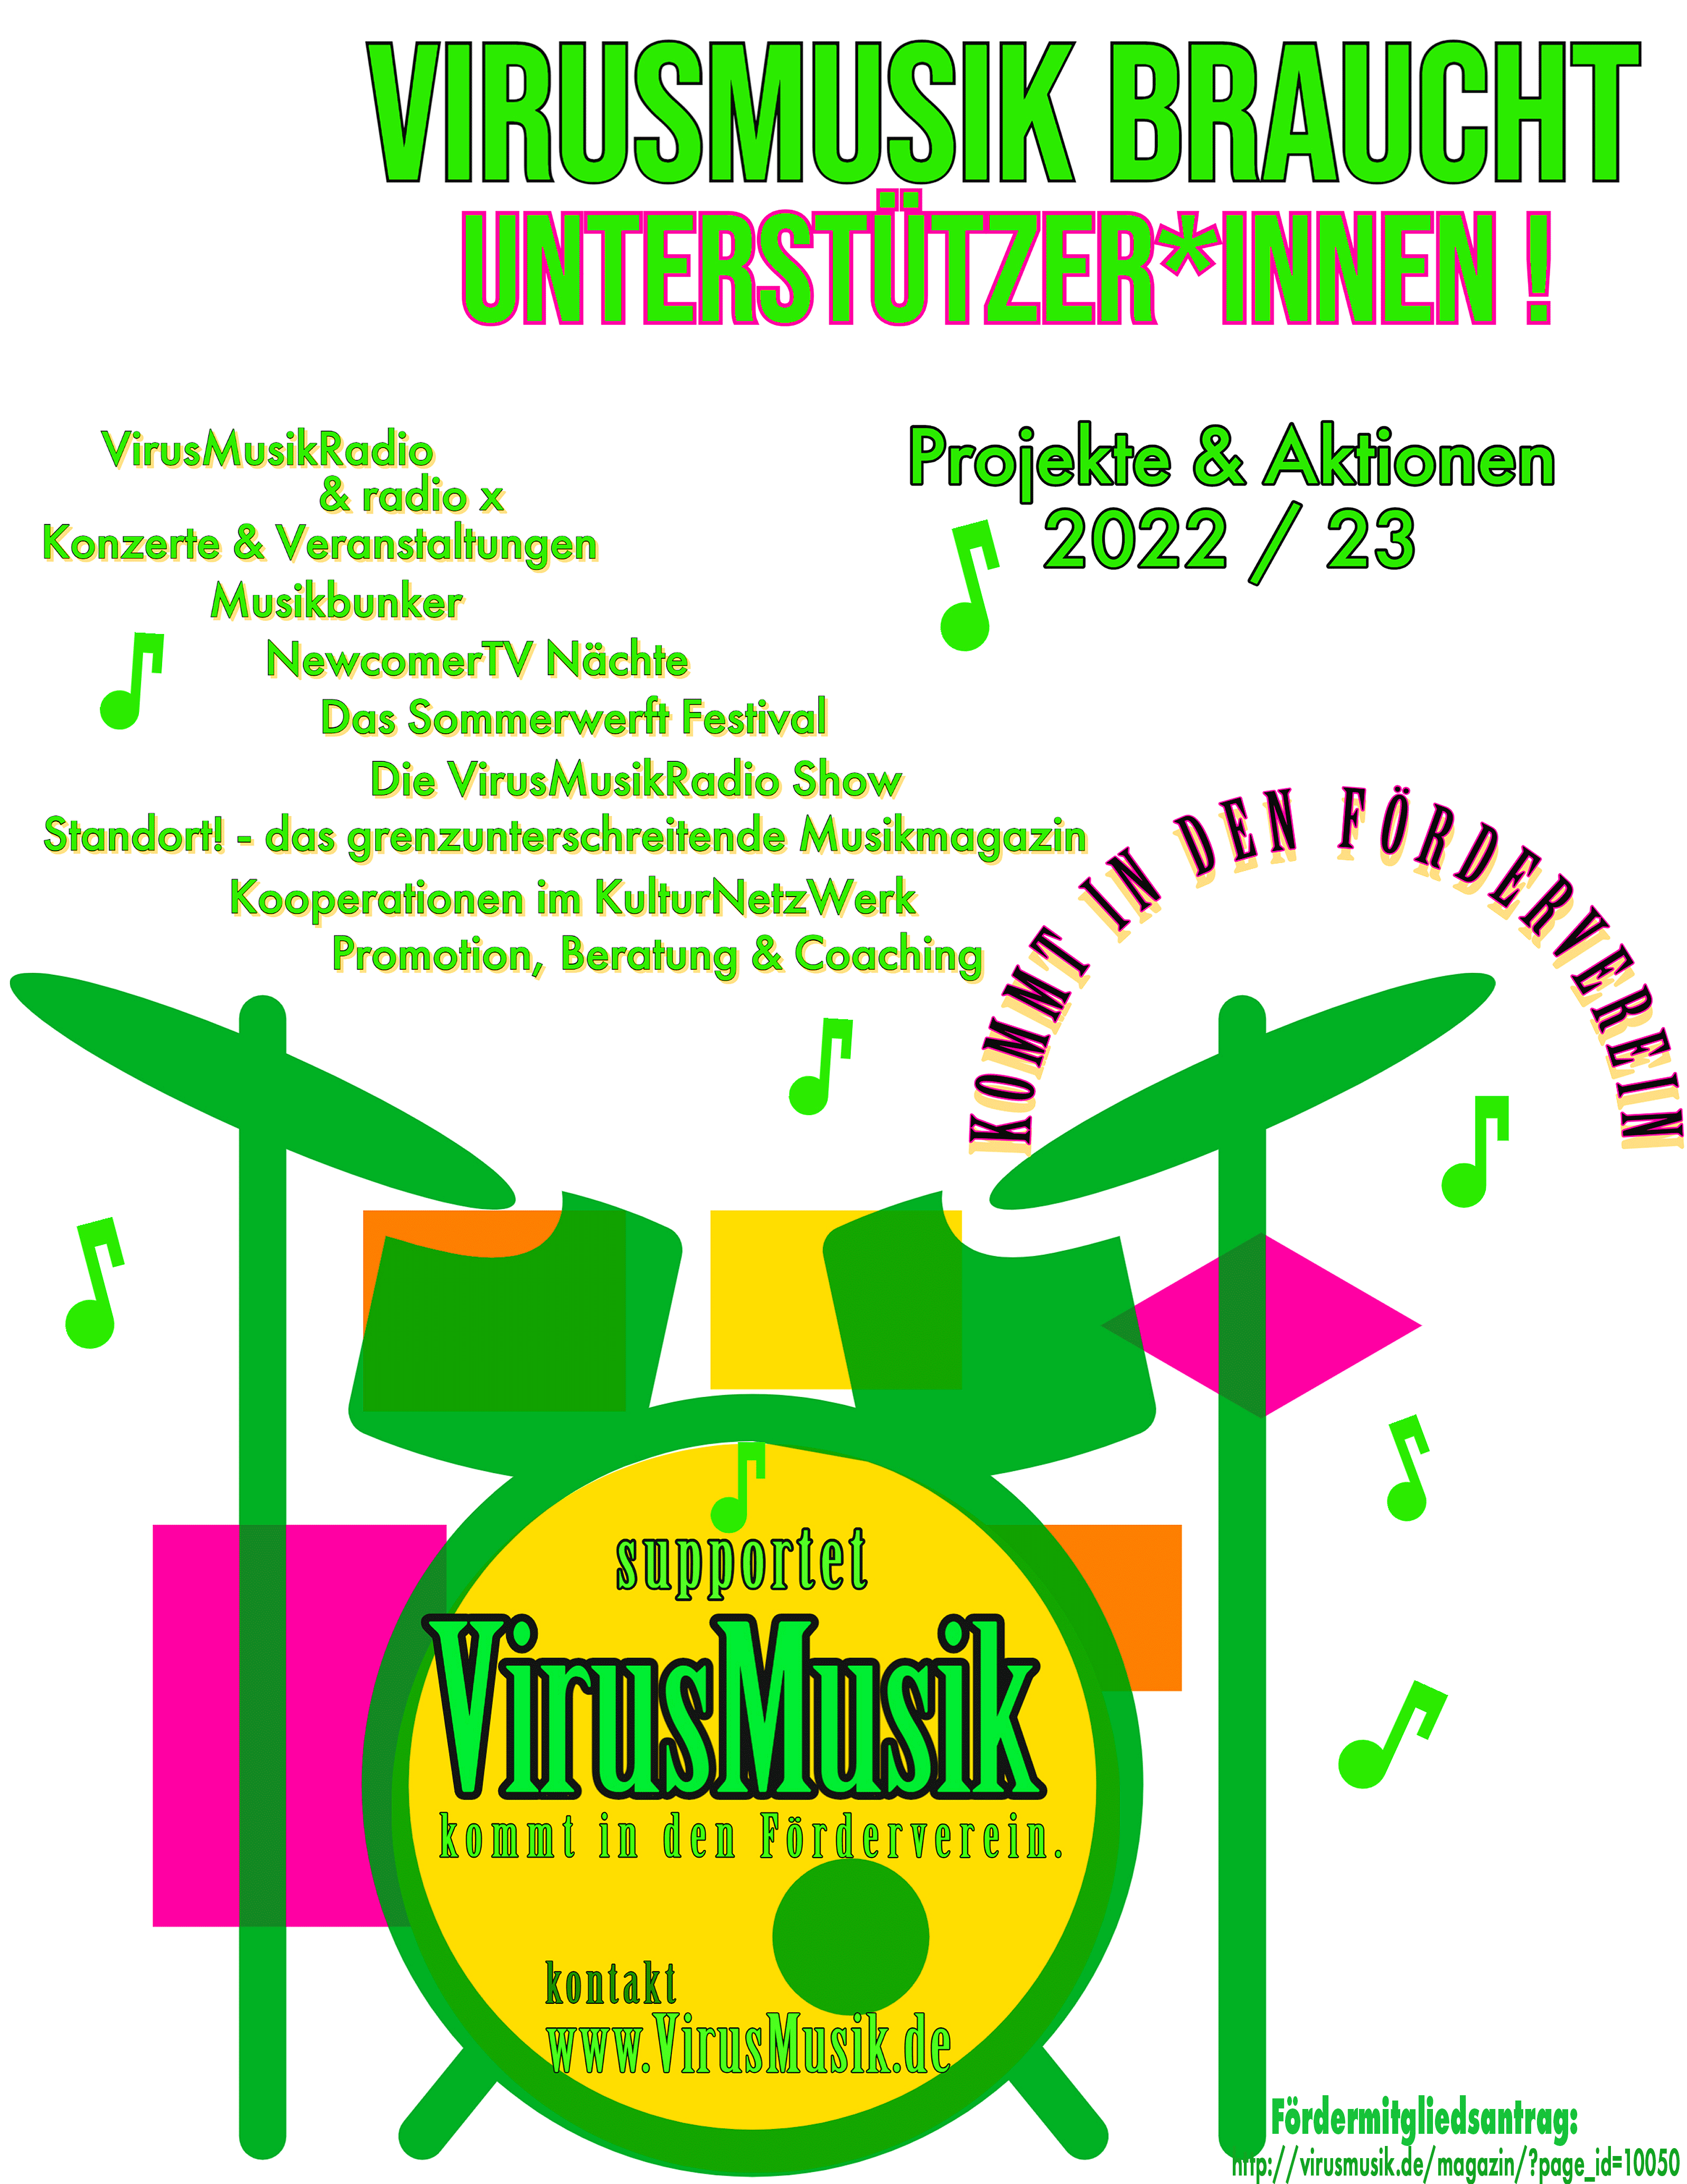 VirusMusik braucht Unterstützer*innen!!!! Projekte & Aktionen 2022 / 2023.